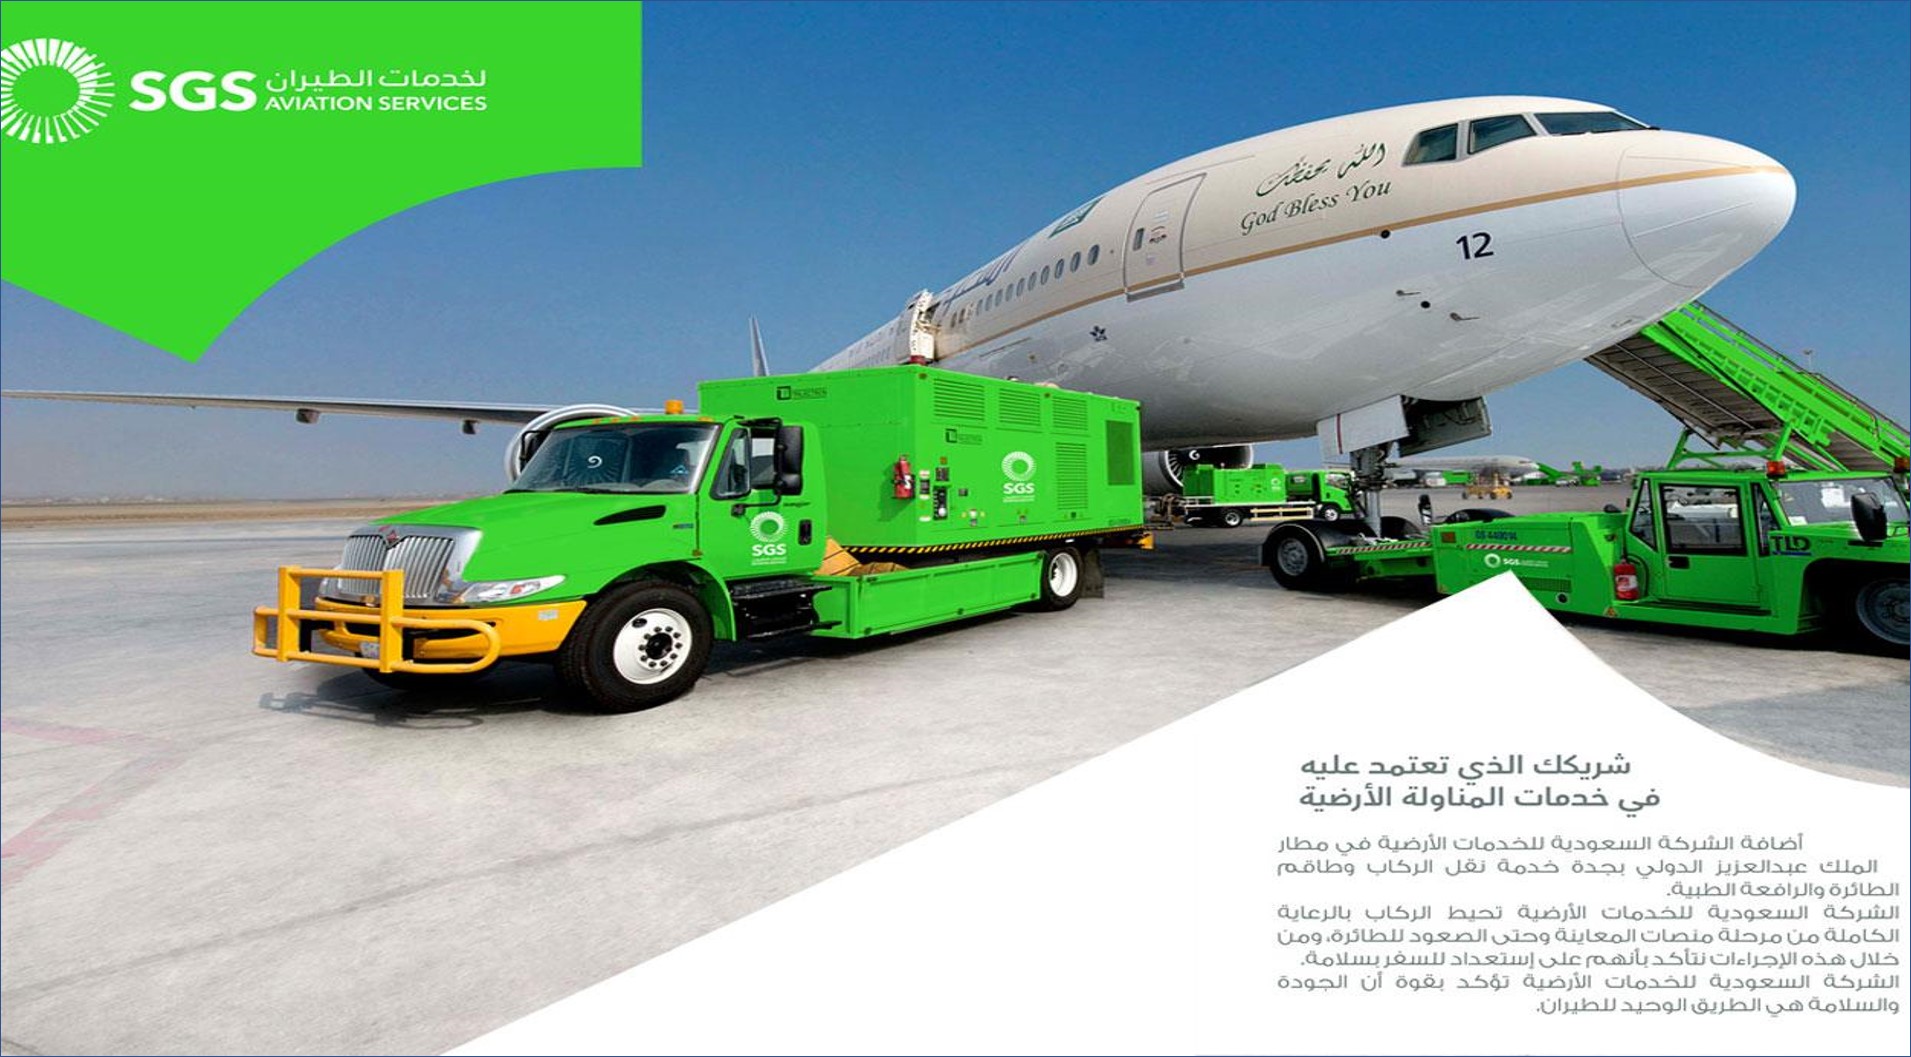 الشركة السعودية للخدمات الأرضية تعلن وظائف للرجال والنساء